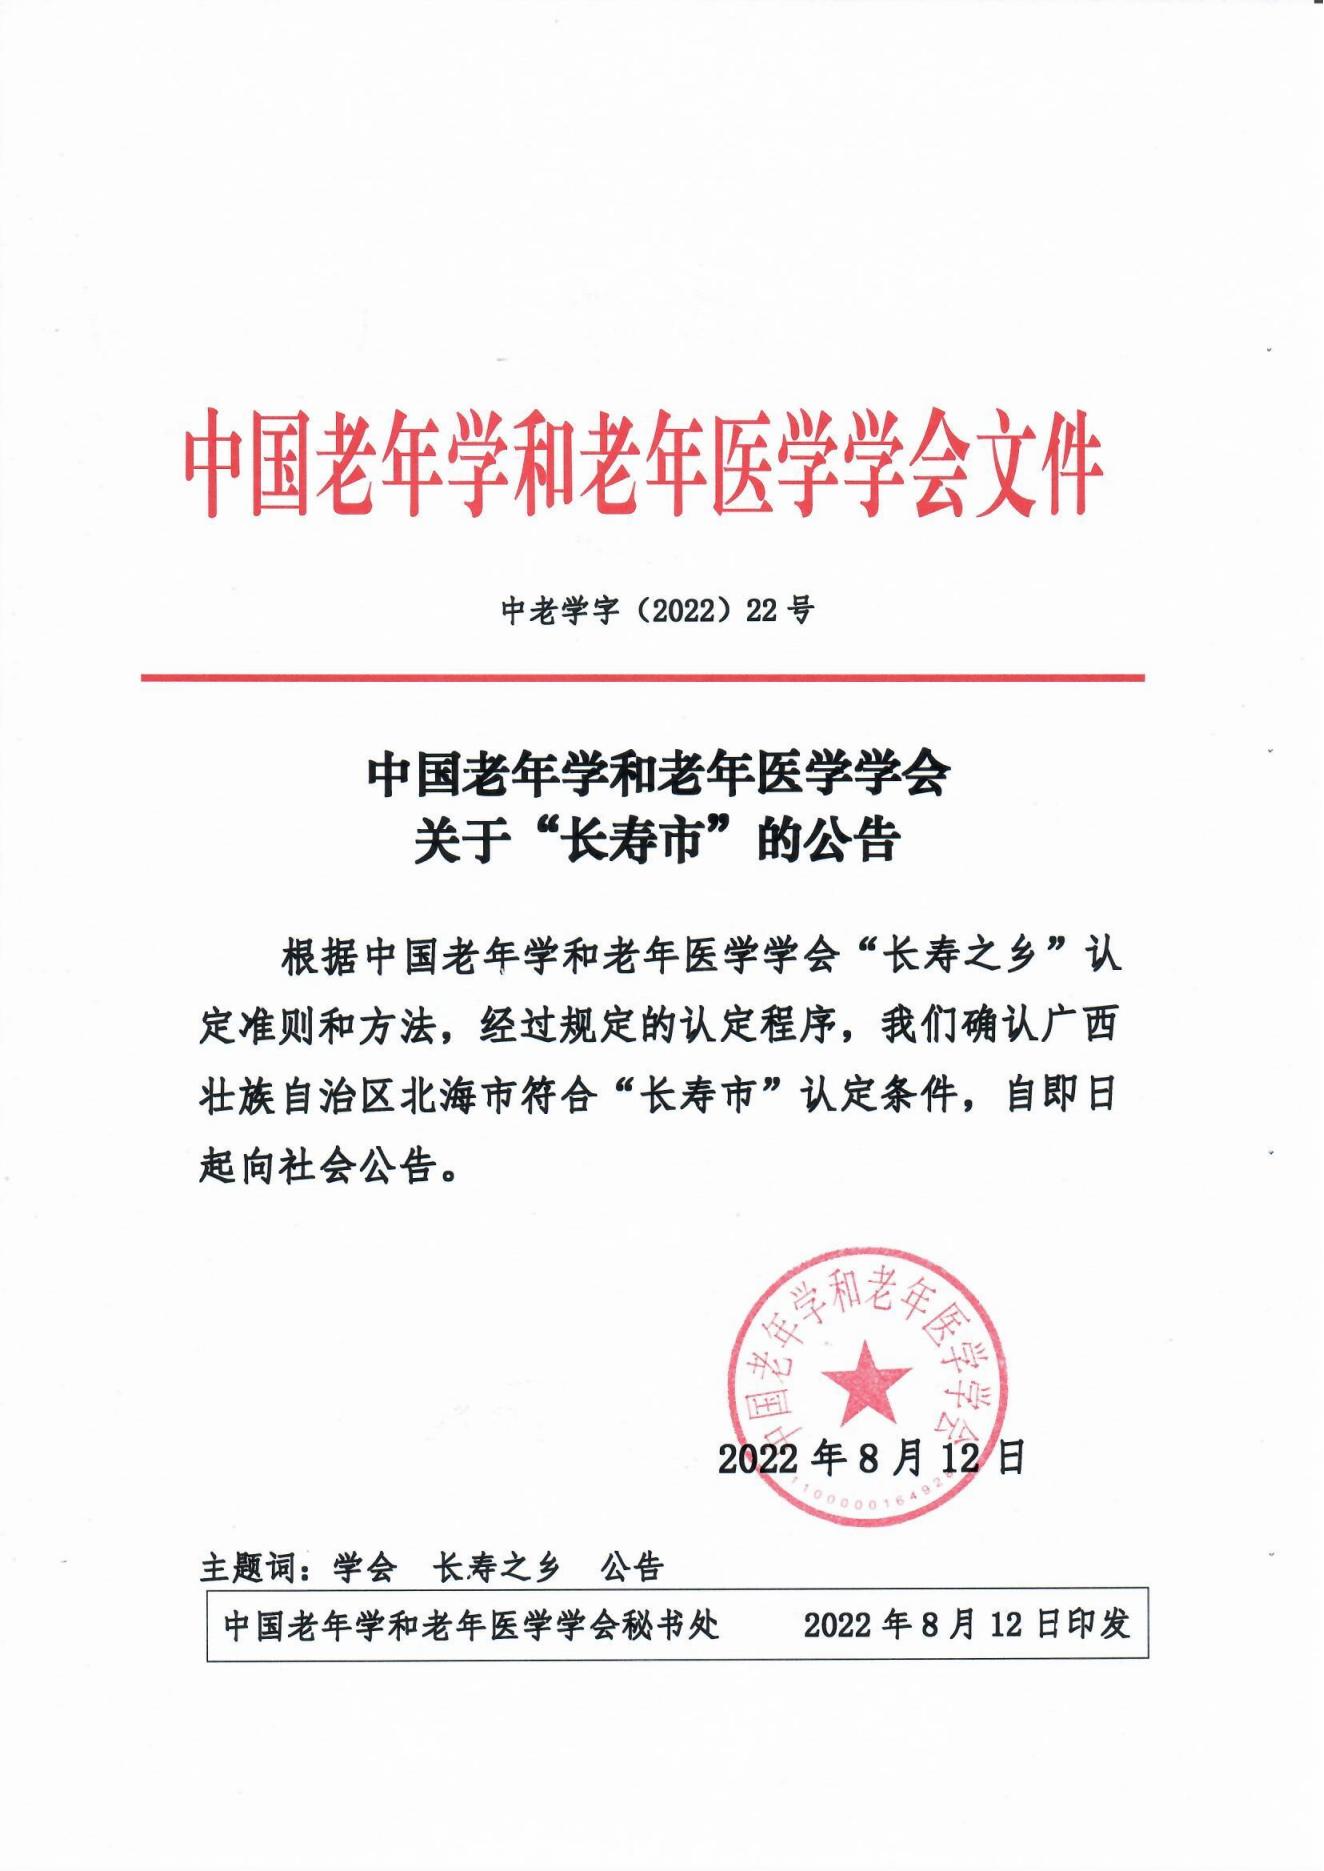 （22号文）中国老年学和老年医学学会关于“长寿市”的公告_00.jpg